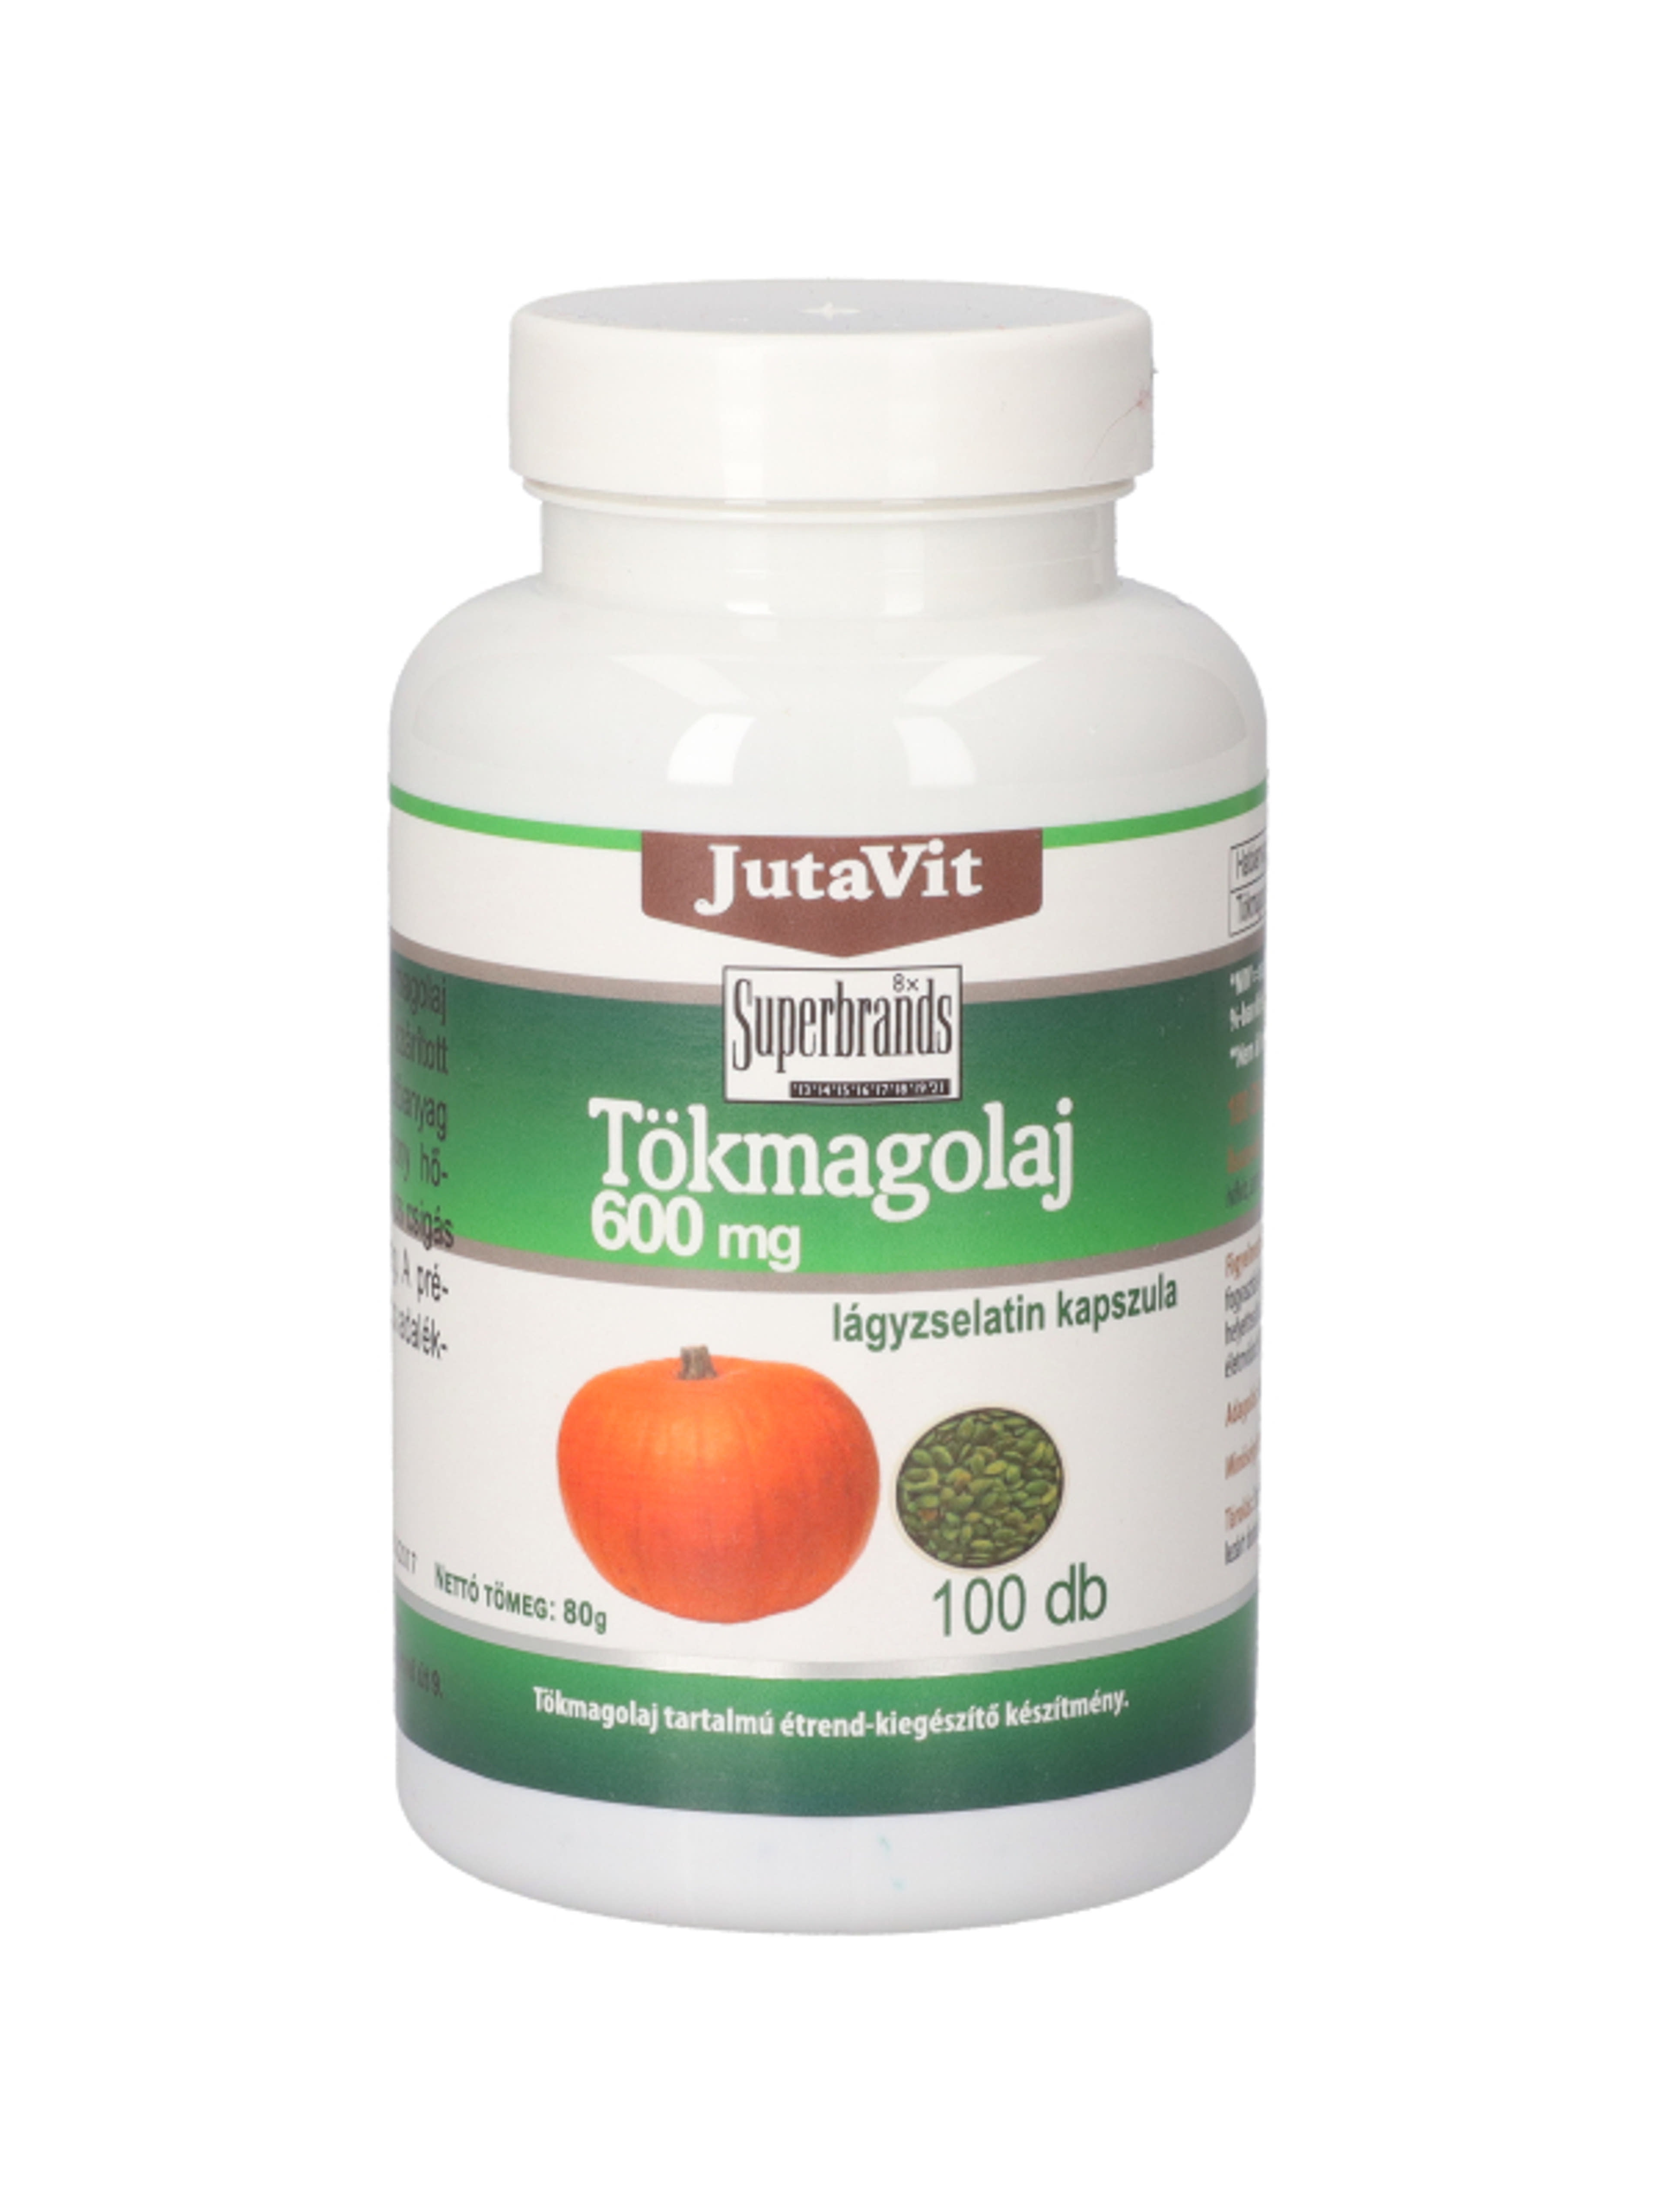 JutaVit tökmagolaj étrend-kiegészítő lágyzselatin kapszula, 600 mg - 100 db